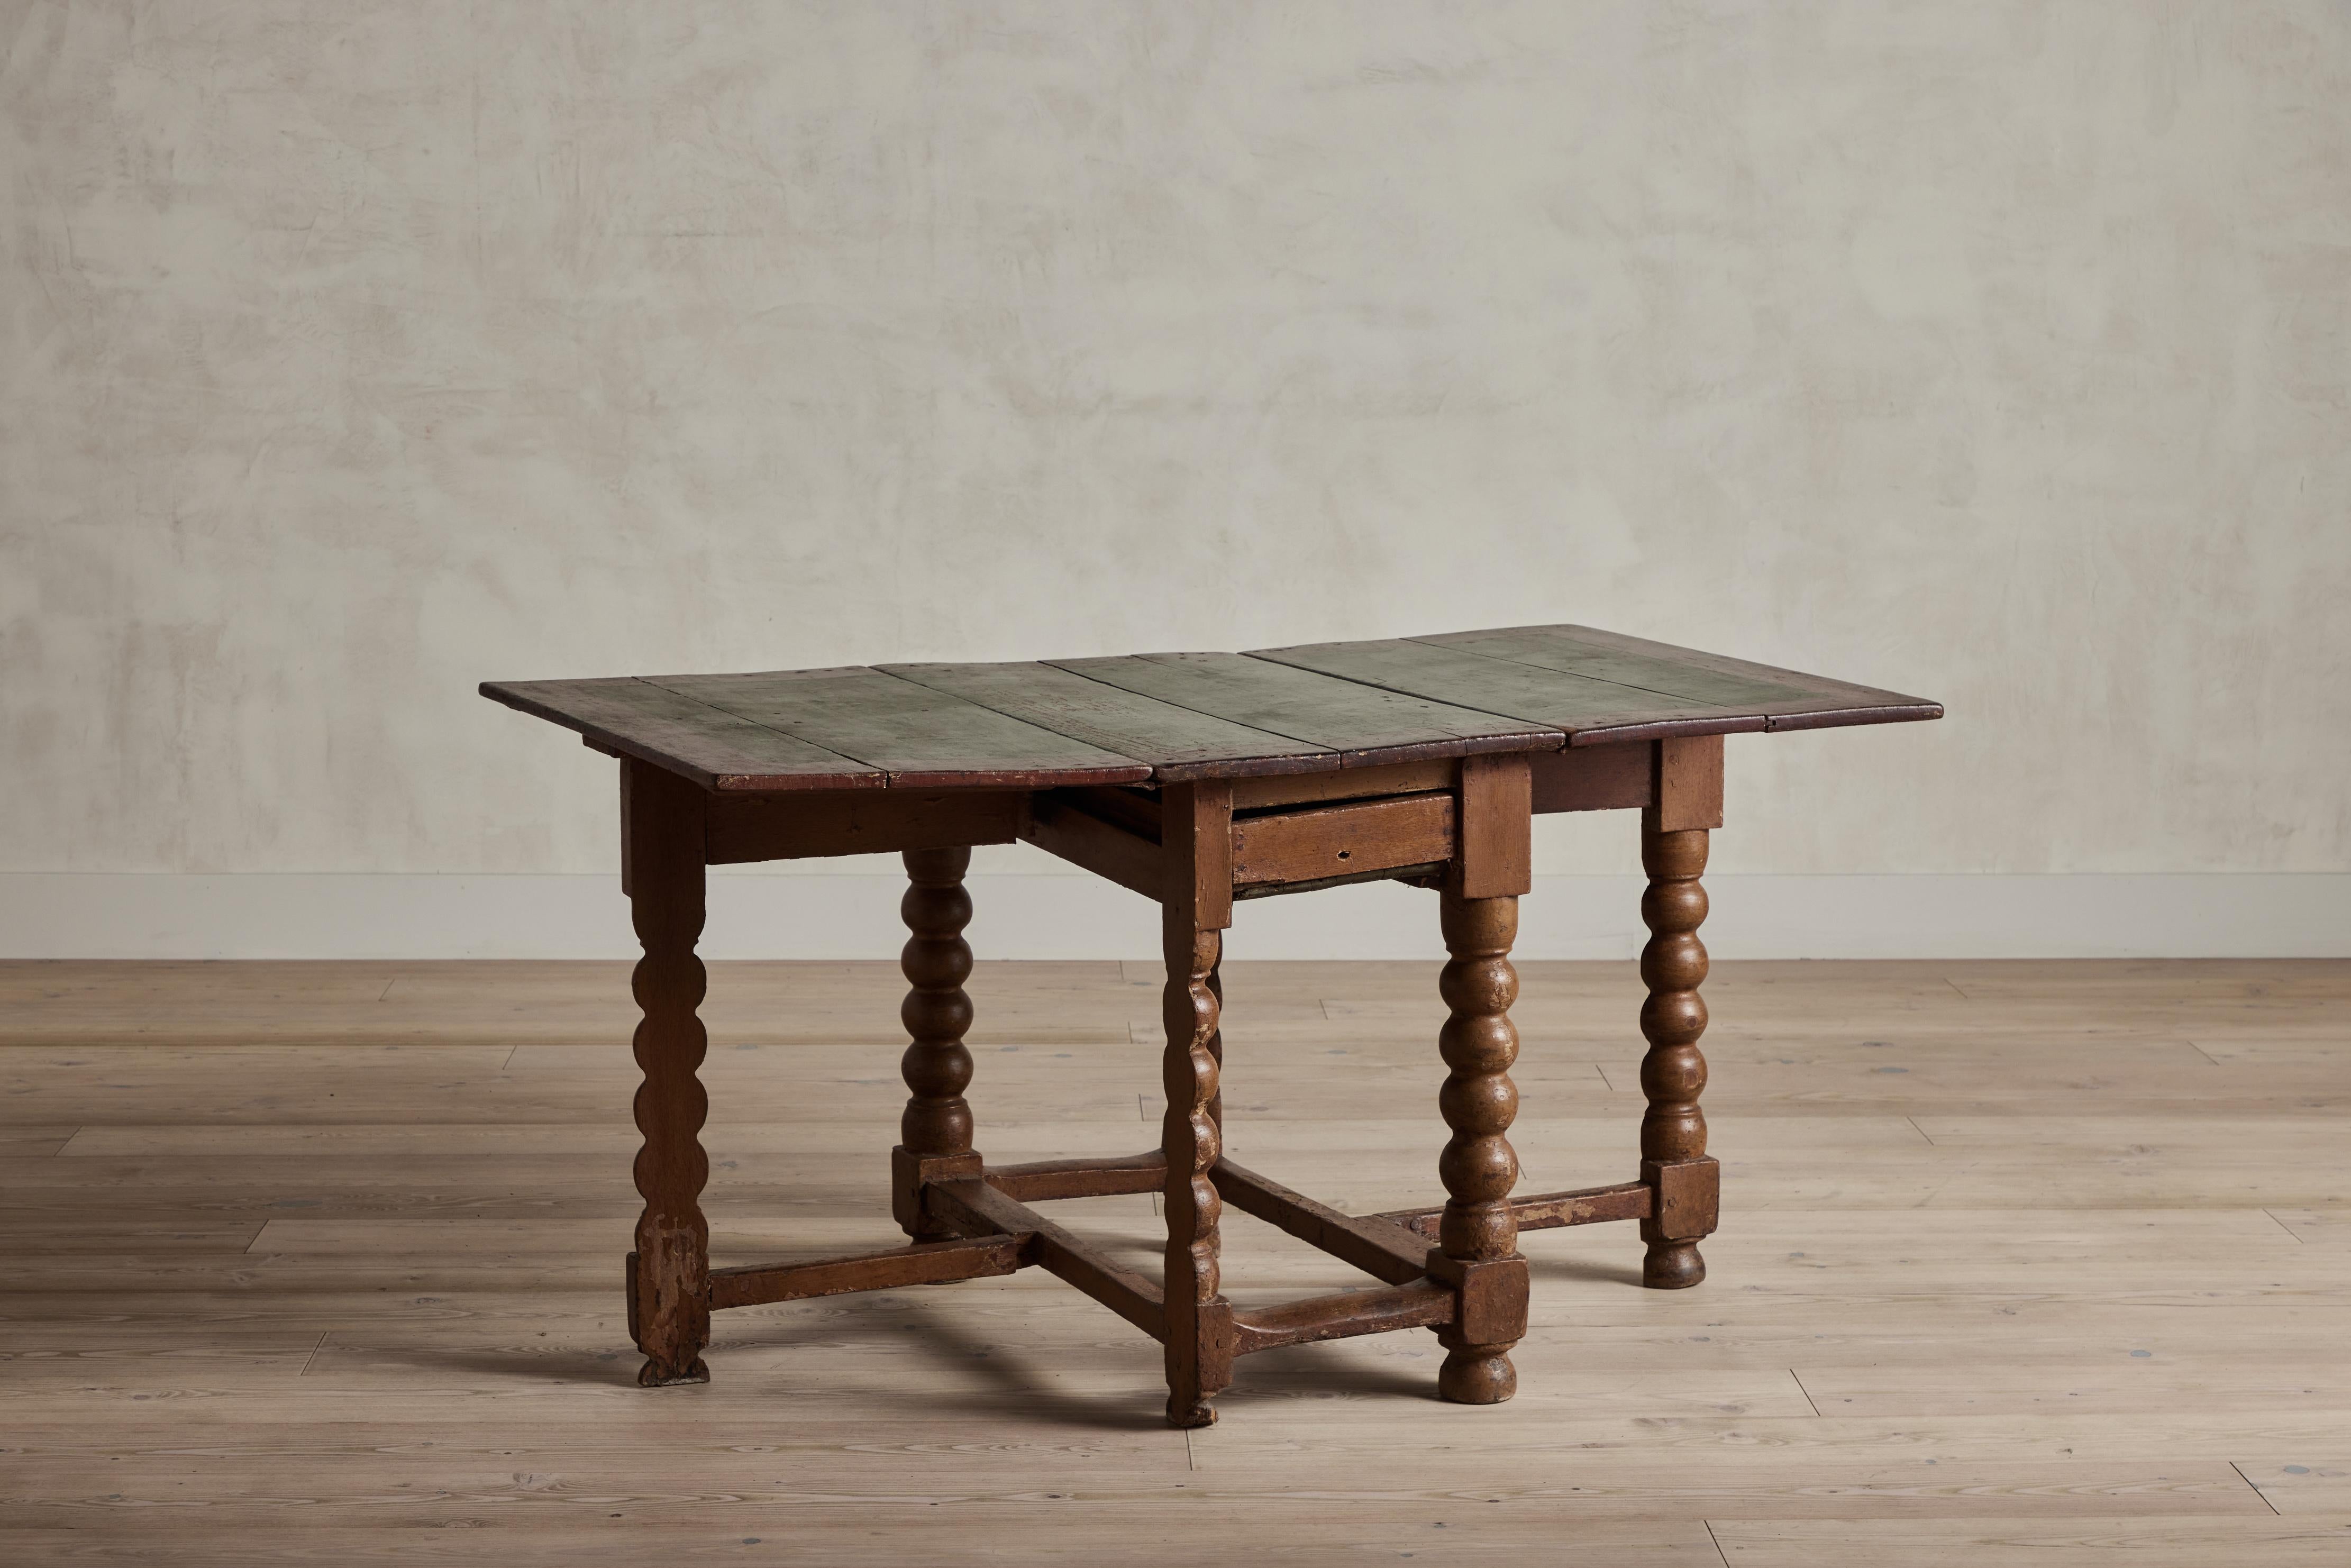 Table hollandaise du XVIIIe siècle en bois avec un plateau rustique peint en vert et rouge. La table possède un petit tiroir central qui se retire. Les pieds articulés s'ouvrent pour supporter les feuilles qui prolongent la surface de la table.